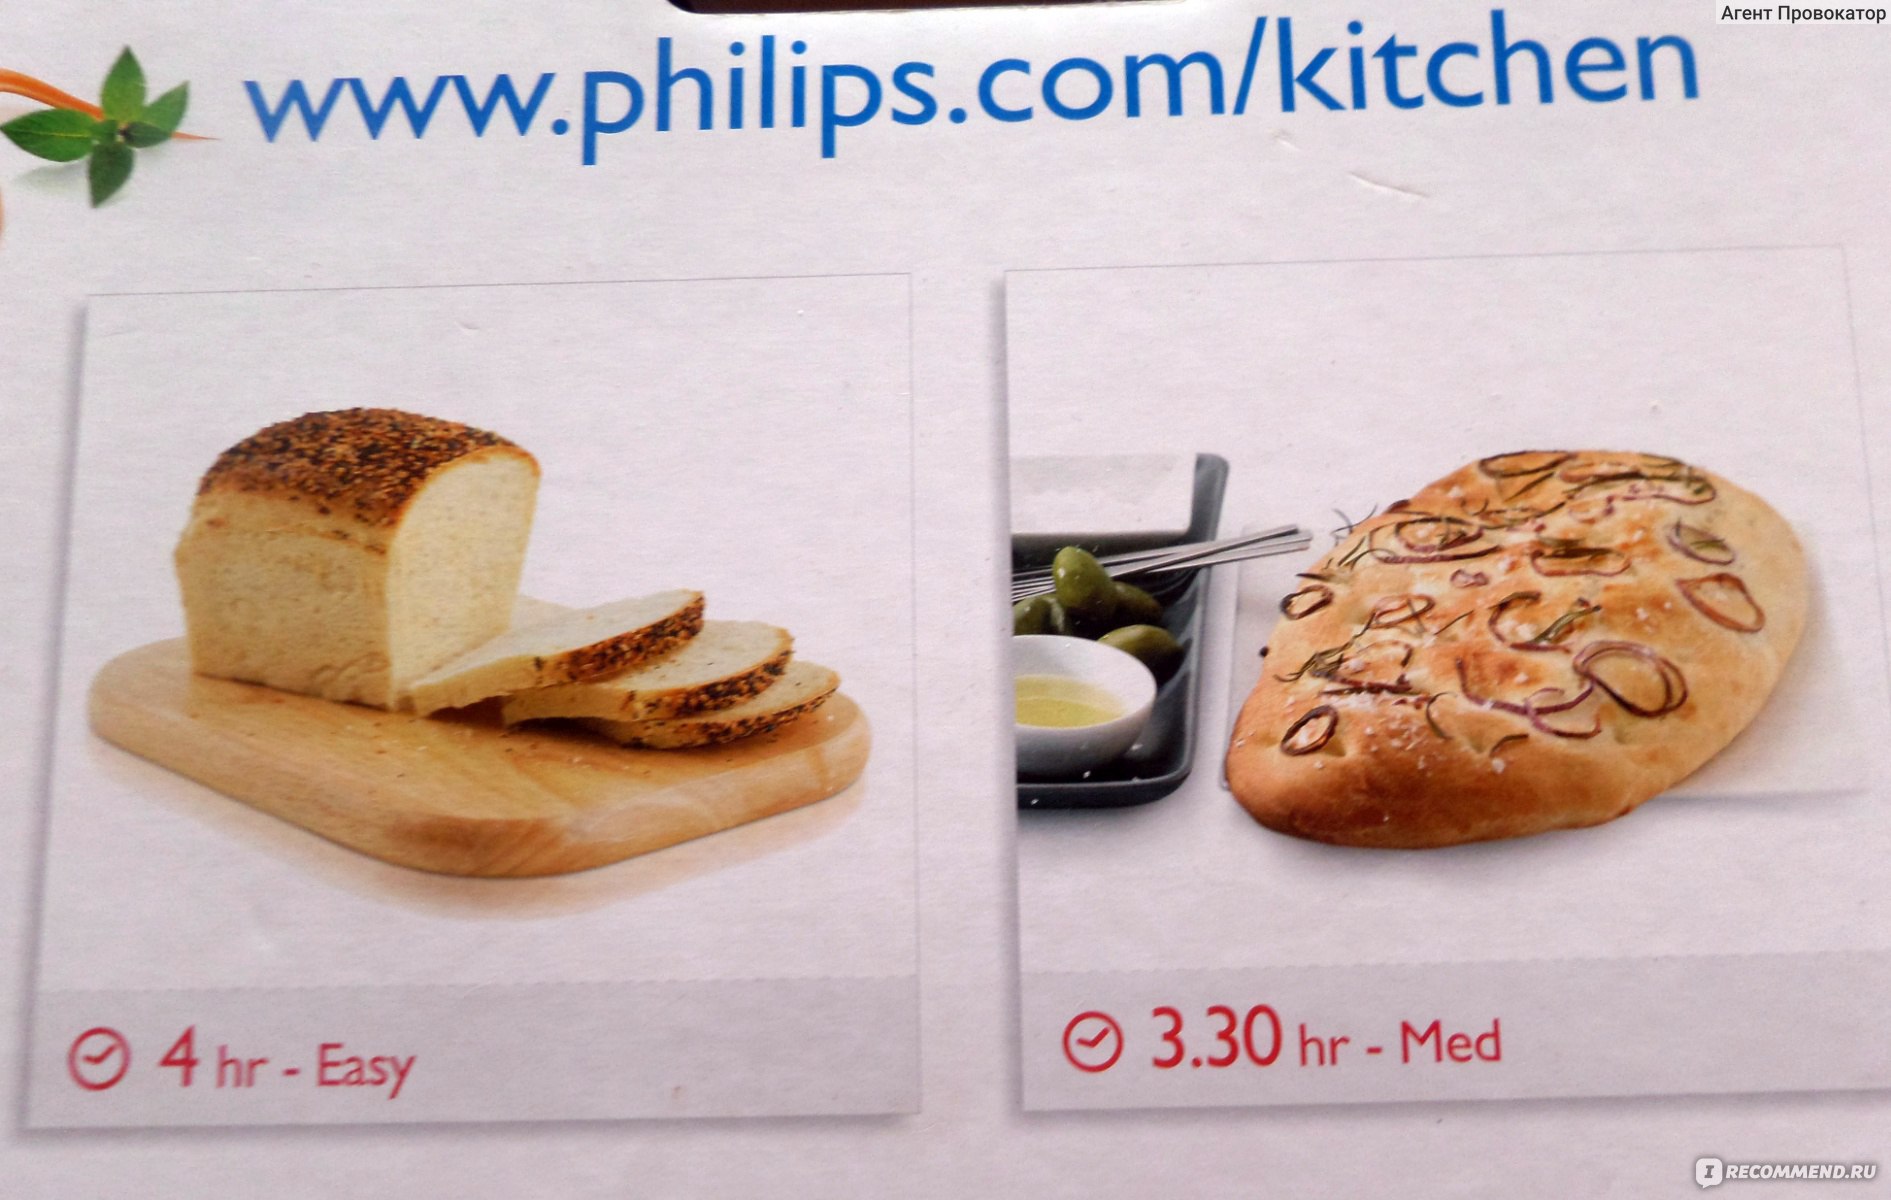 Хлебопечка филипс рецепты. Хлебопечка Филипс hd9020. Рецепты для хлебопечки Филипс hd9020. Рецепт хлеба в хлебопечке Philips hd9020. Хлебопечь Филипс 9020 рецепты хлеба.